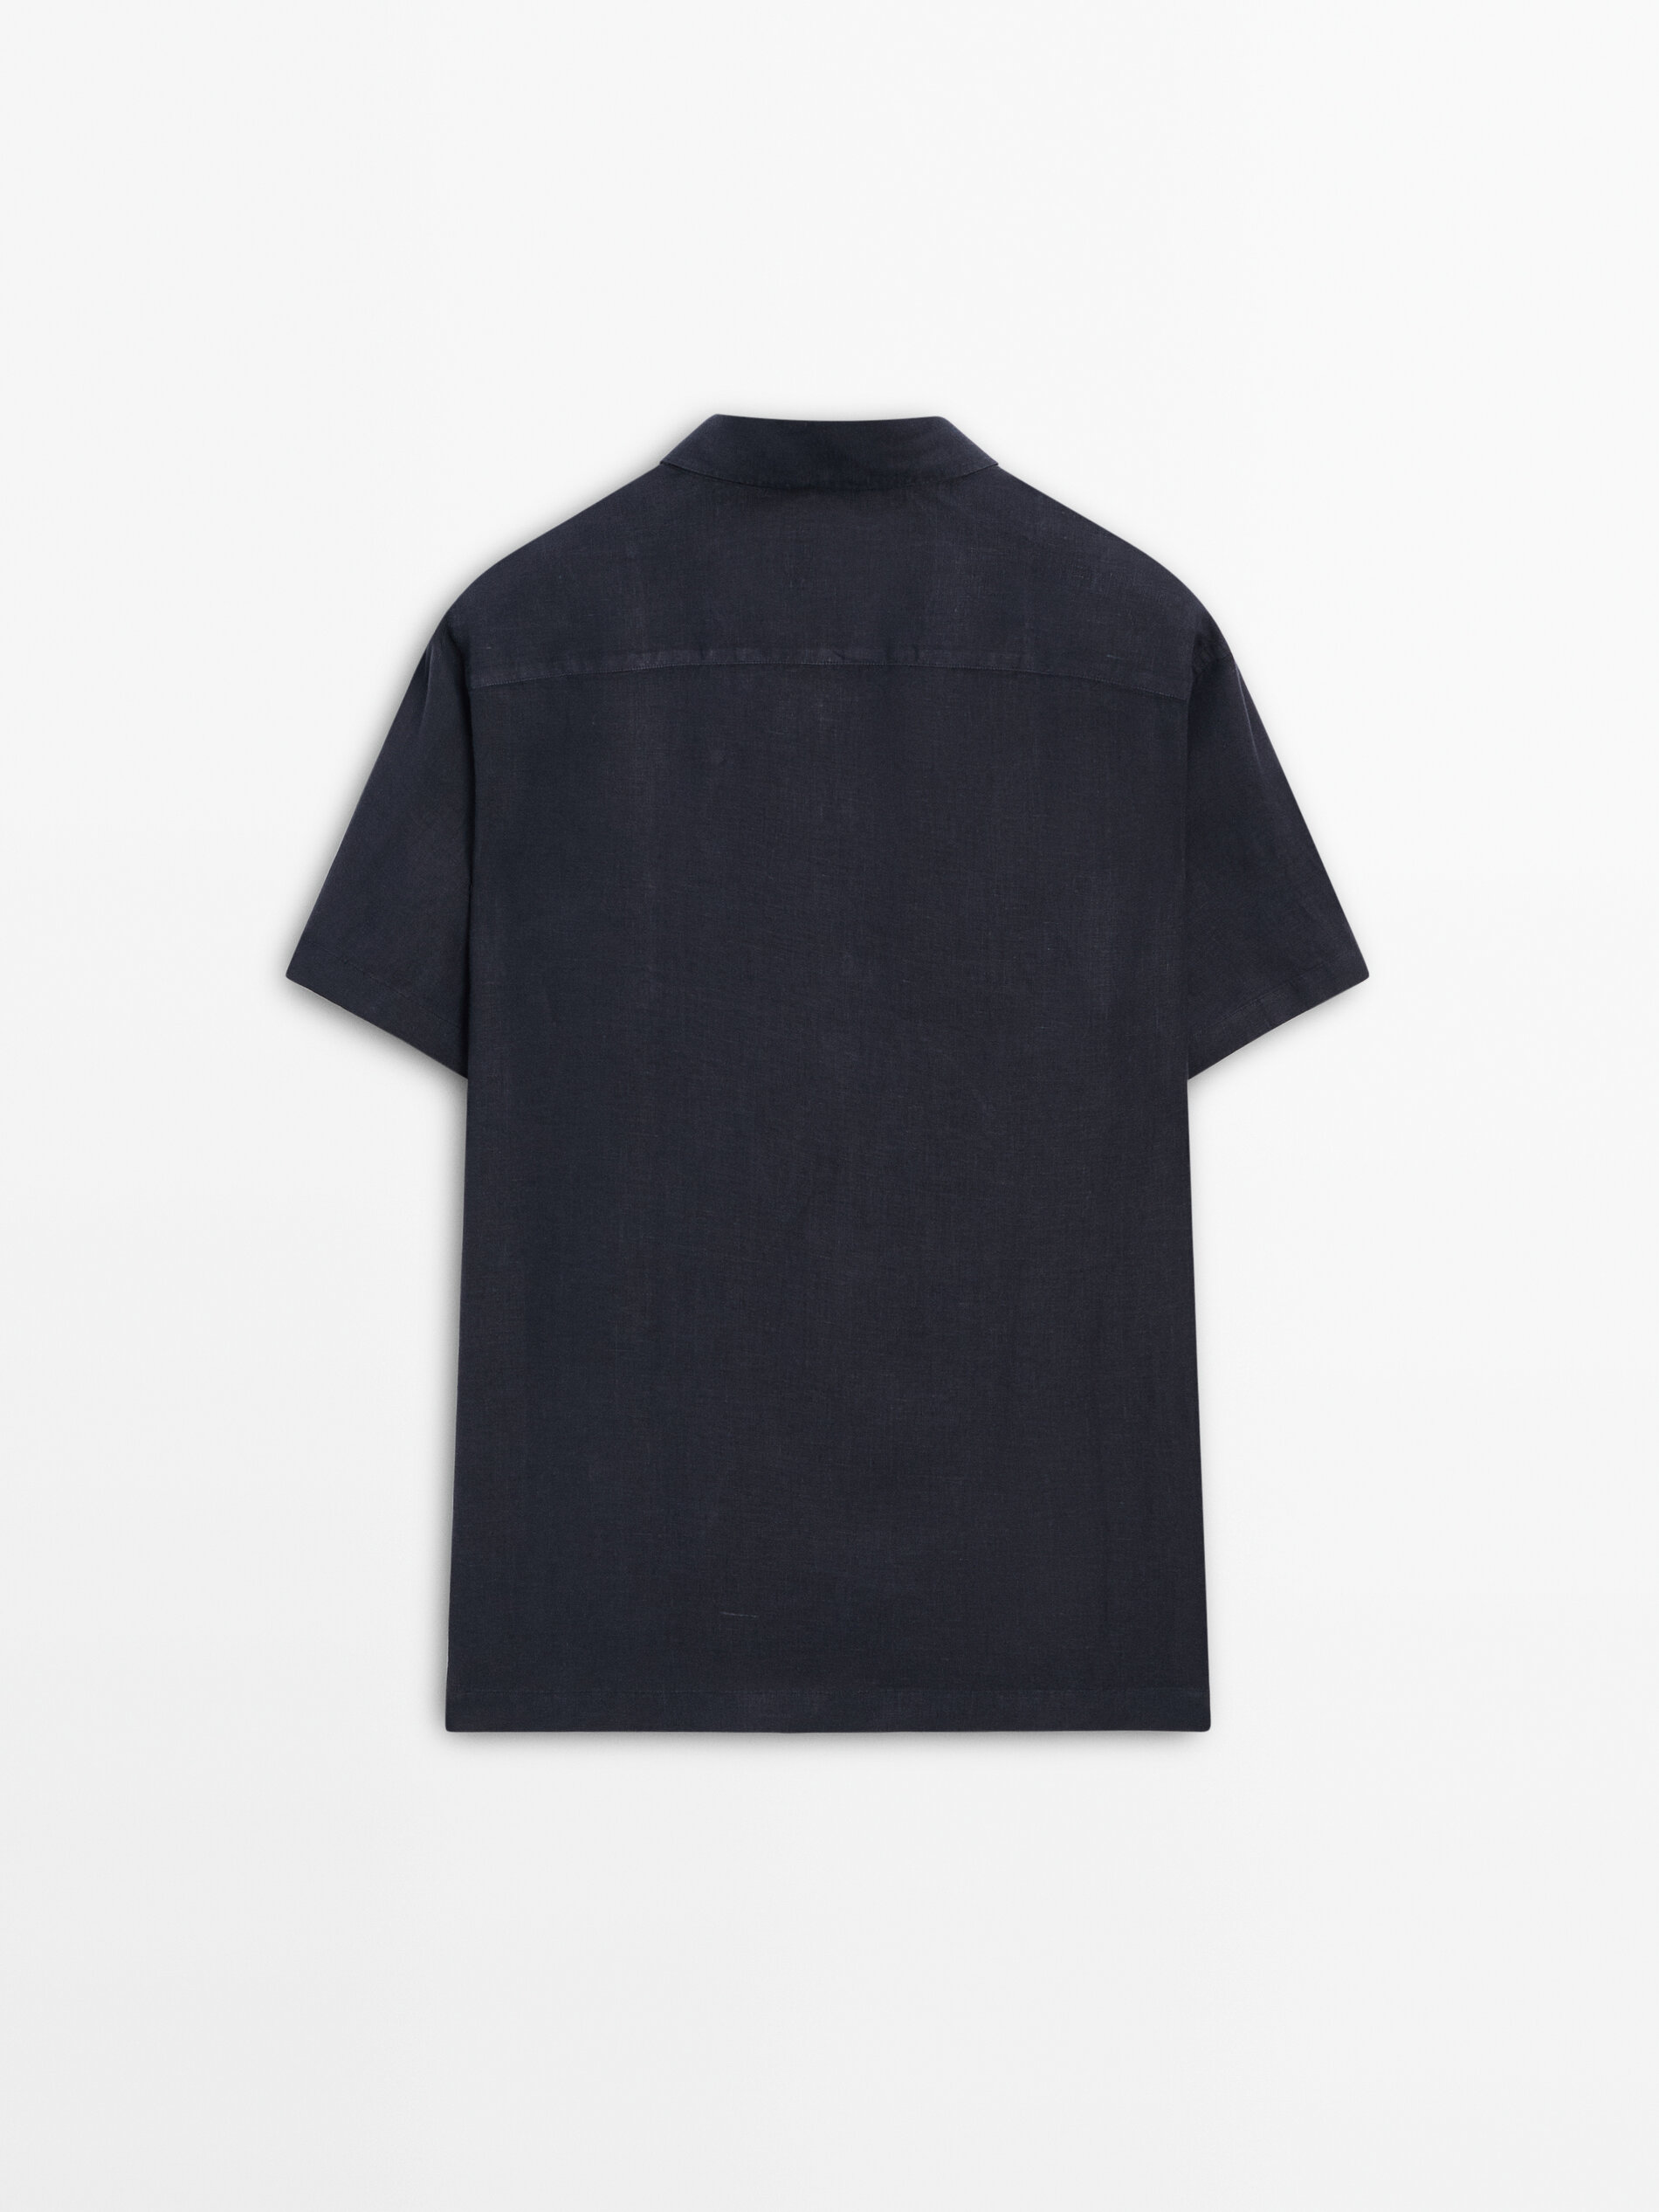 Camisa 100% lino manga corta